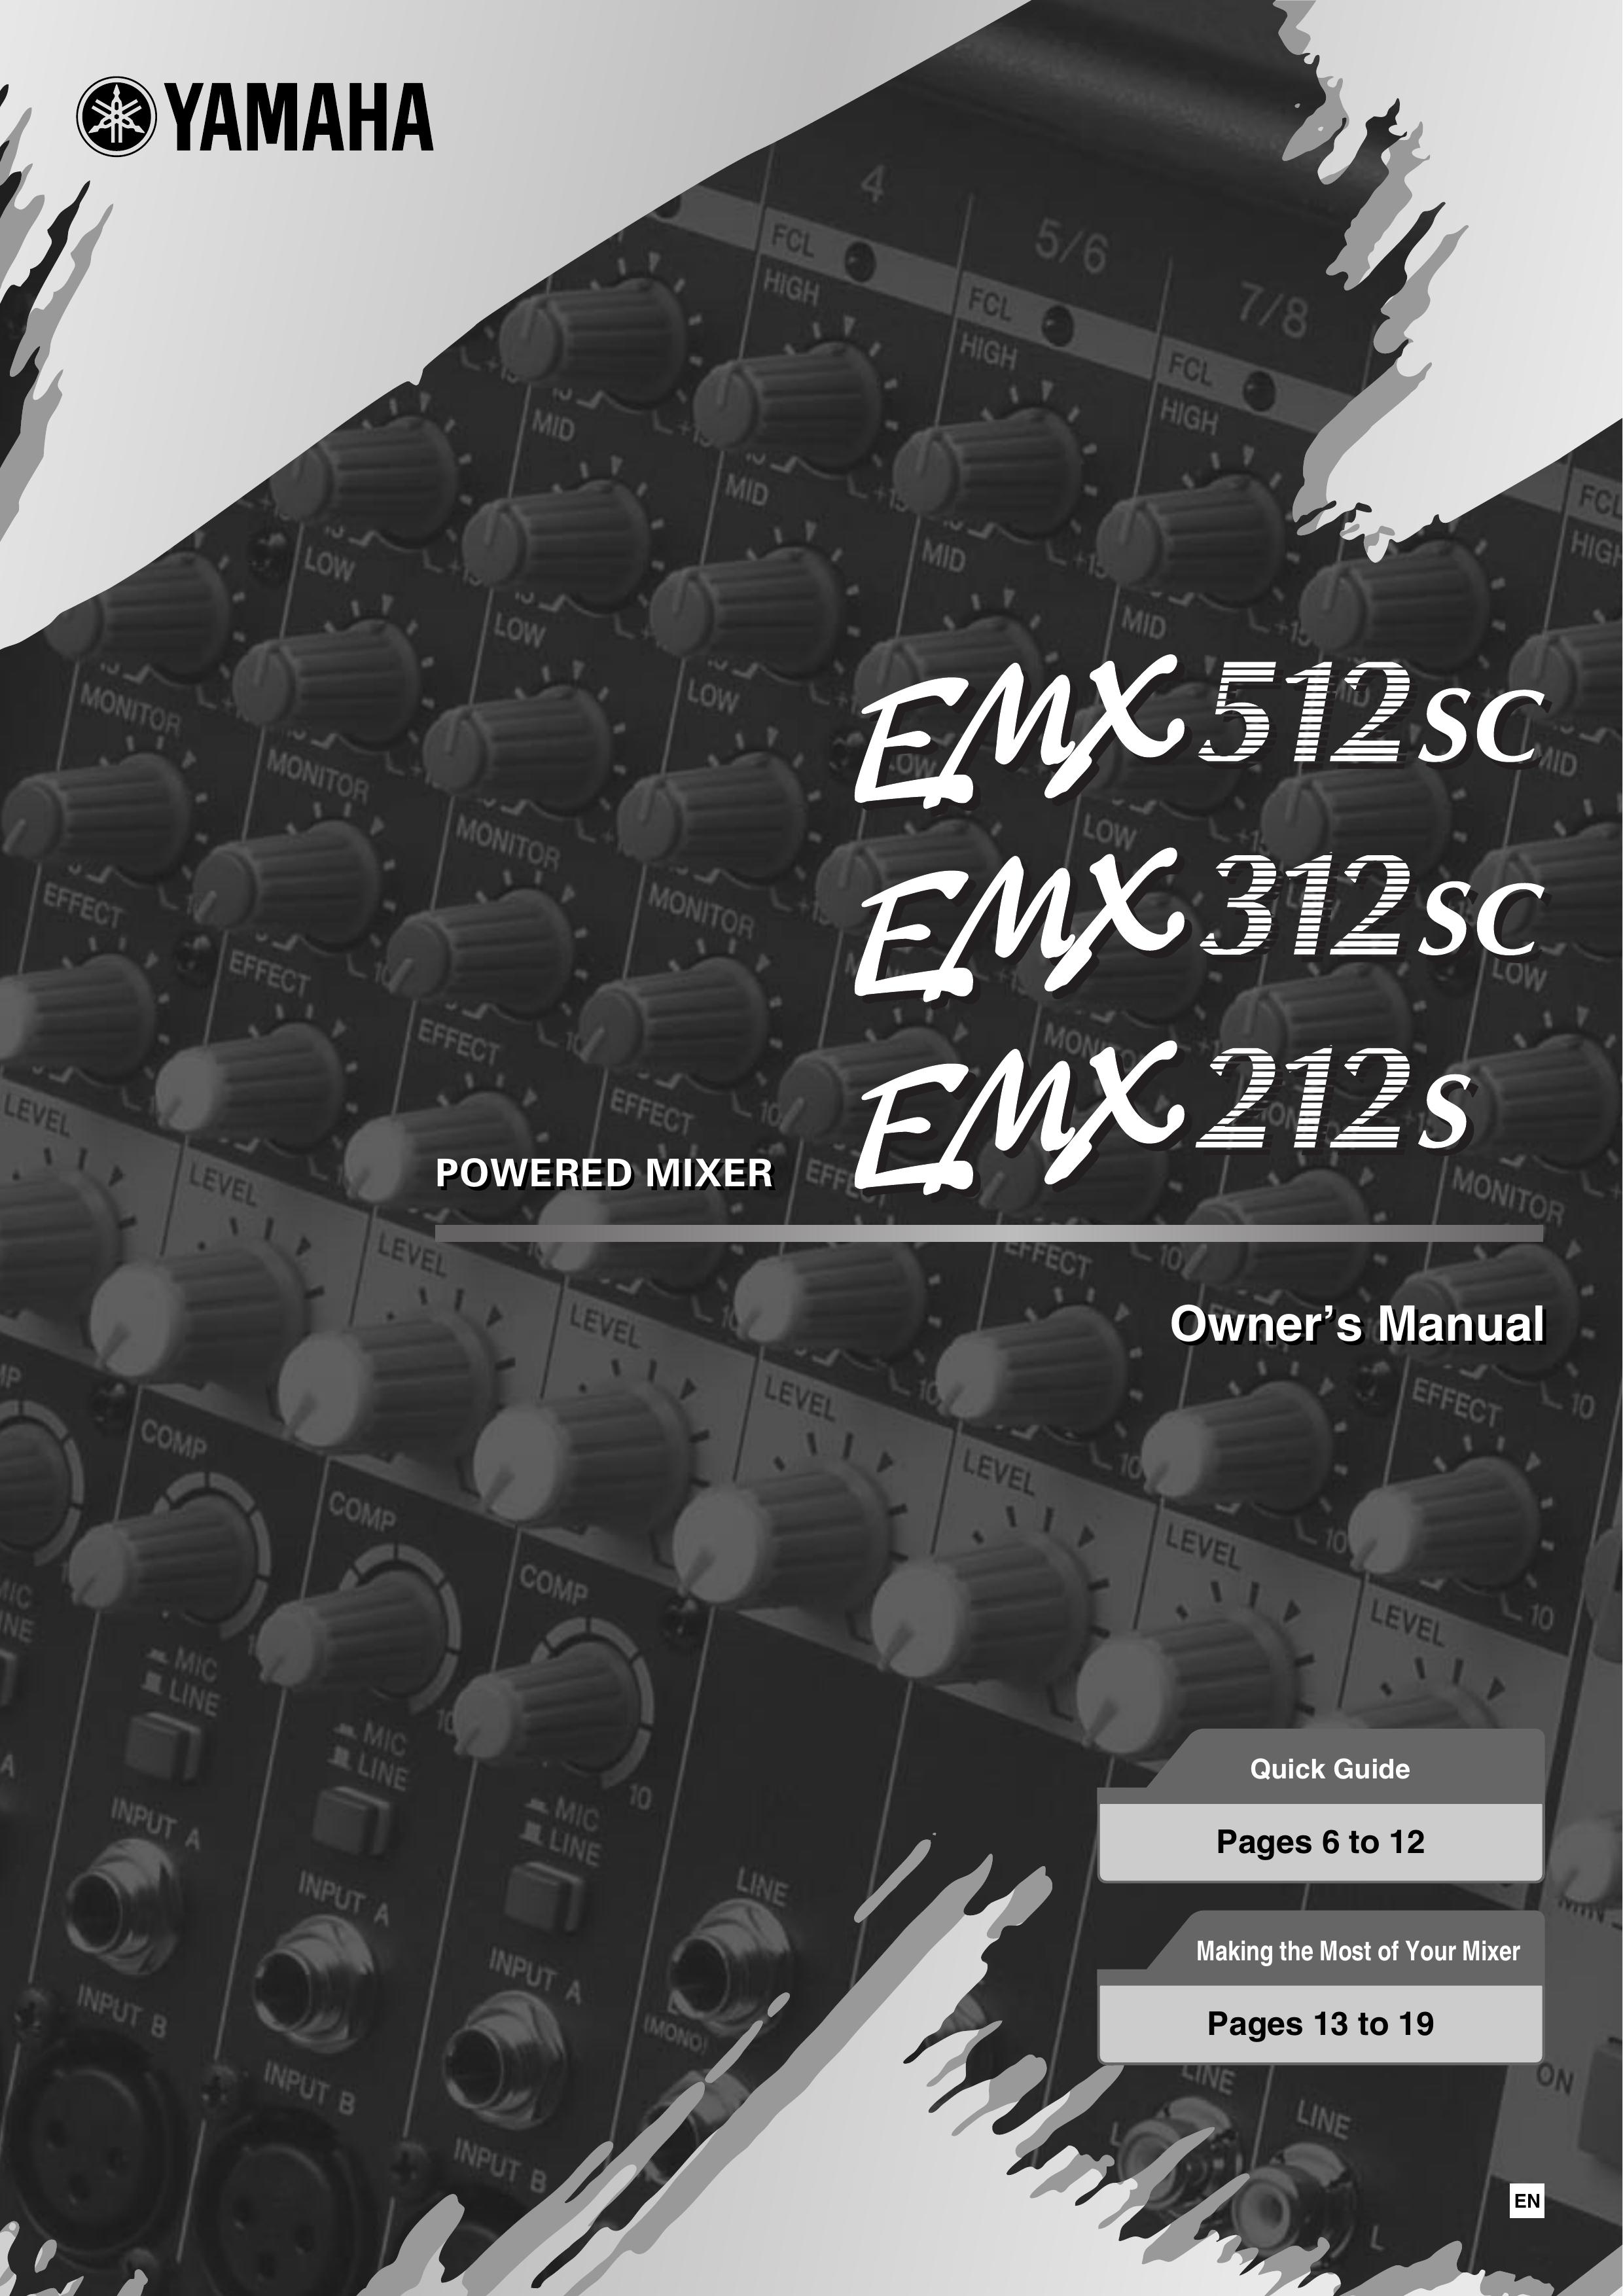 Yamaha EMX212S Music Mixer User Manual